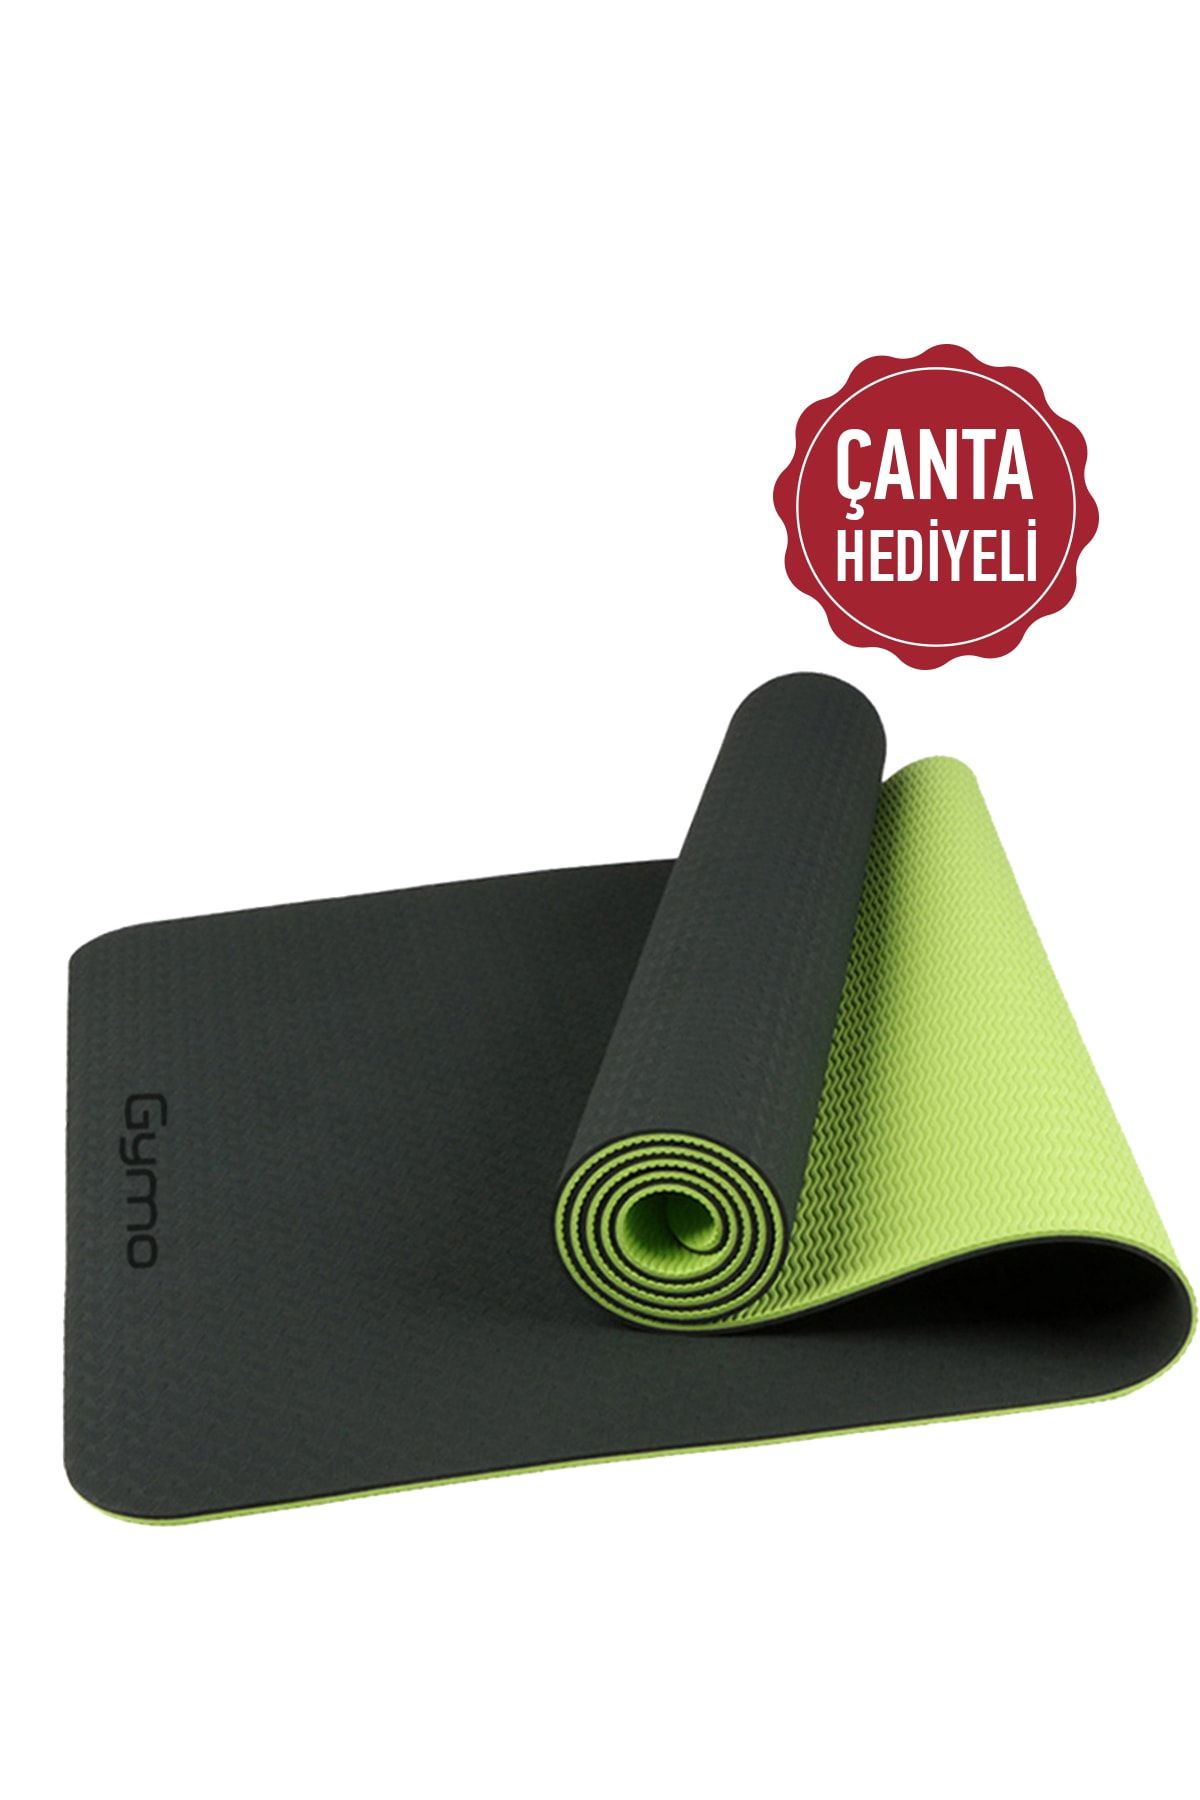 Gymo Ekolojik 6mm Tpe Yoga Matı Pilates Minderi Neon Yeşil Taşıma Çantalı